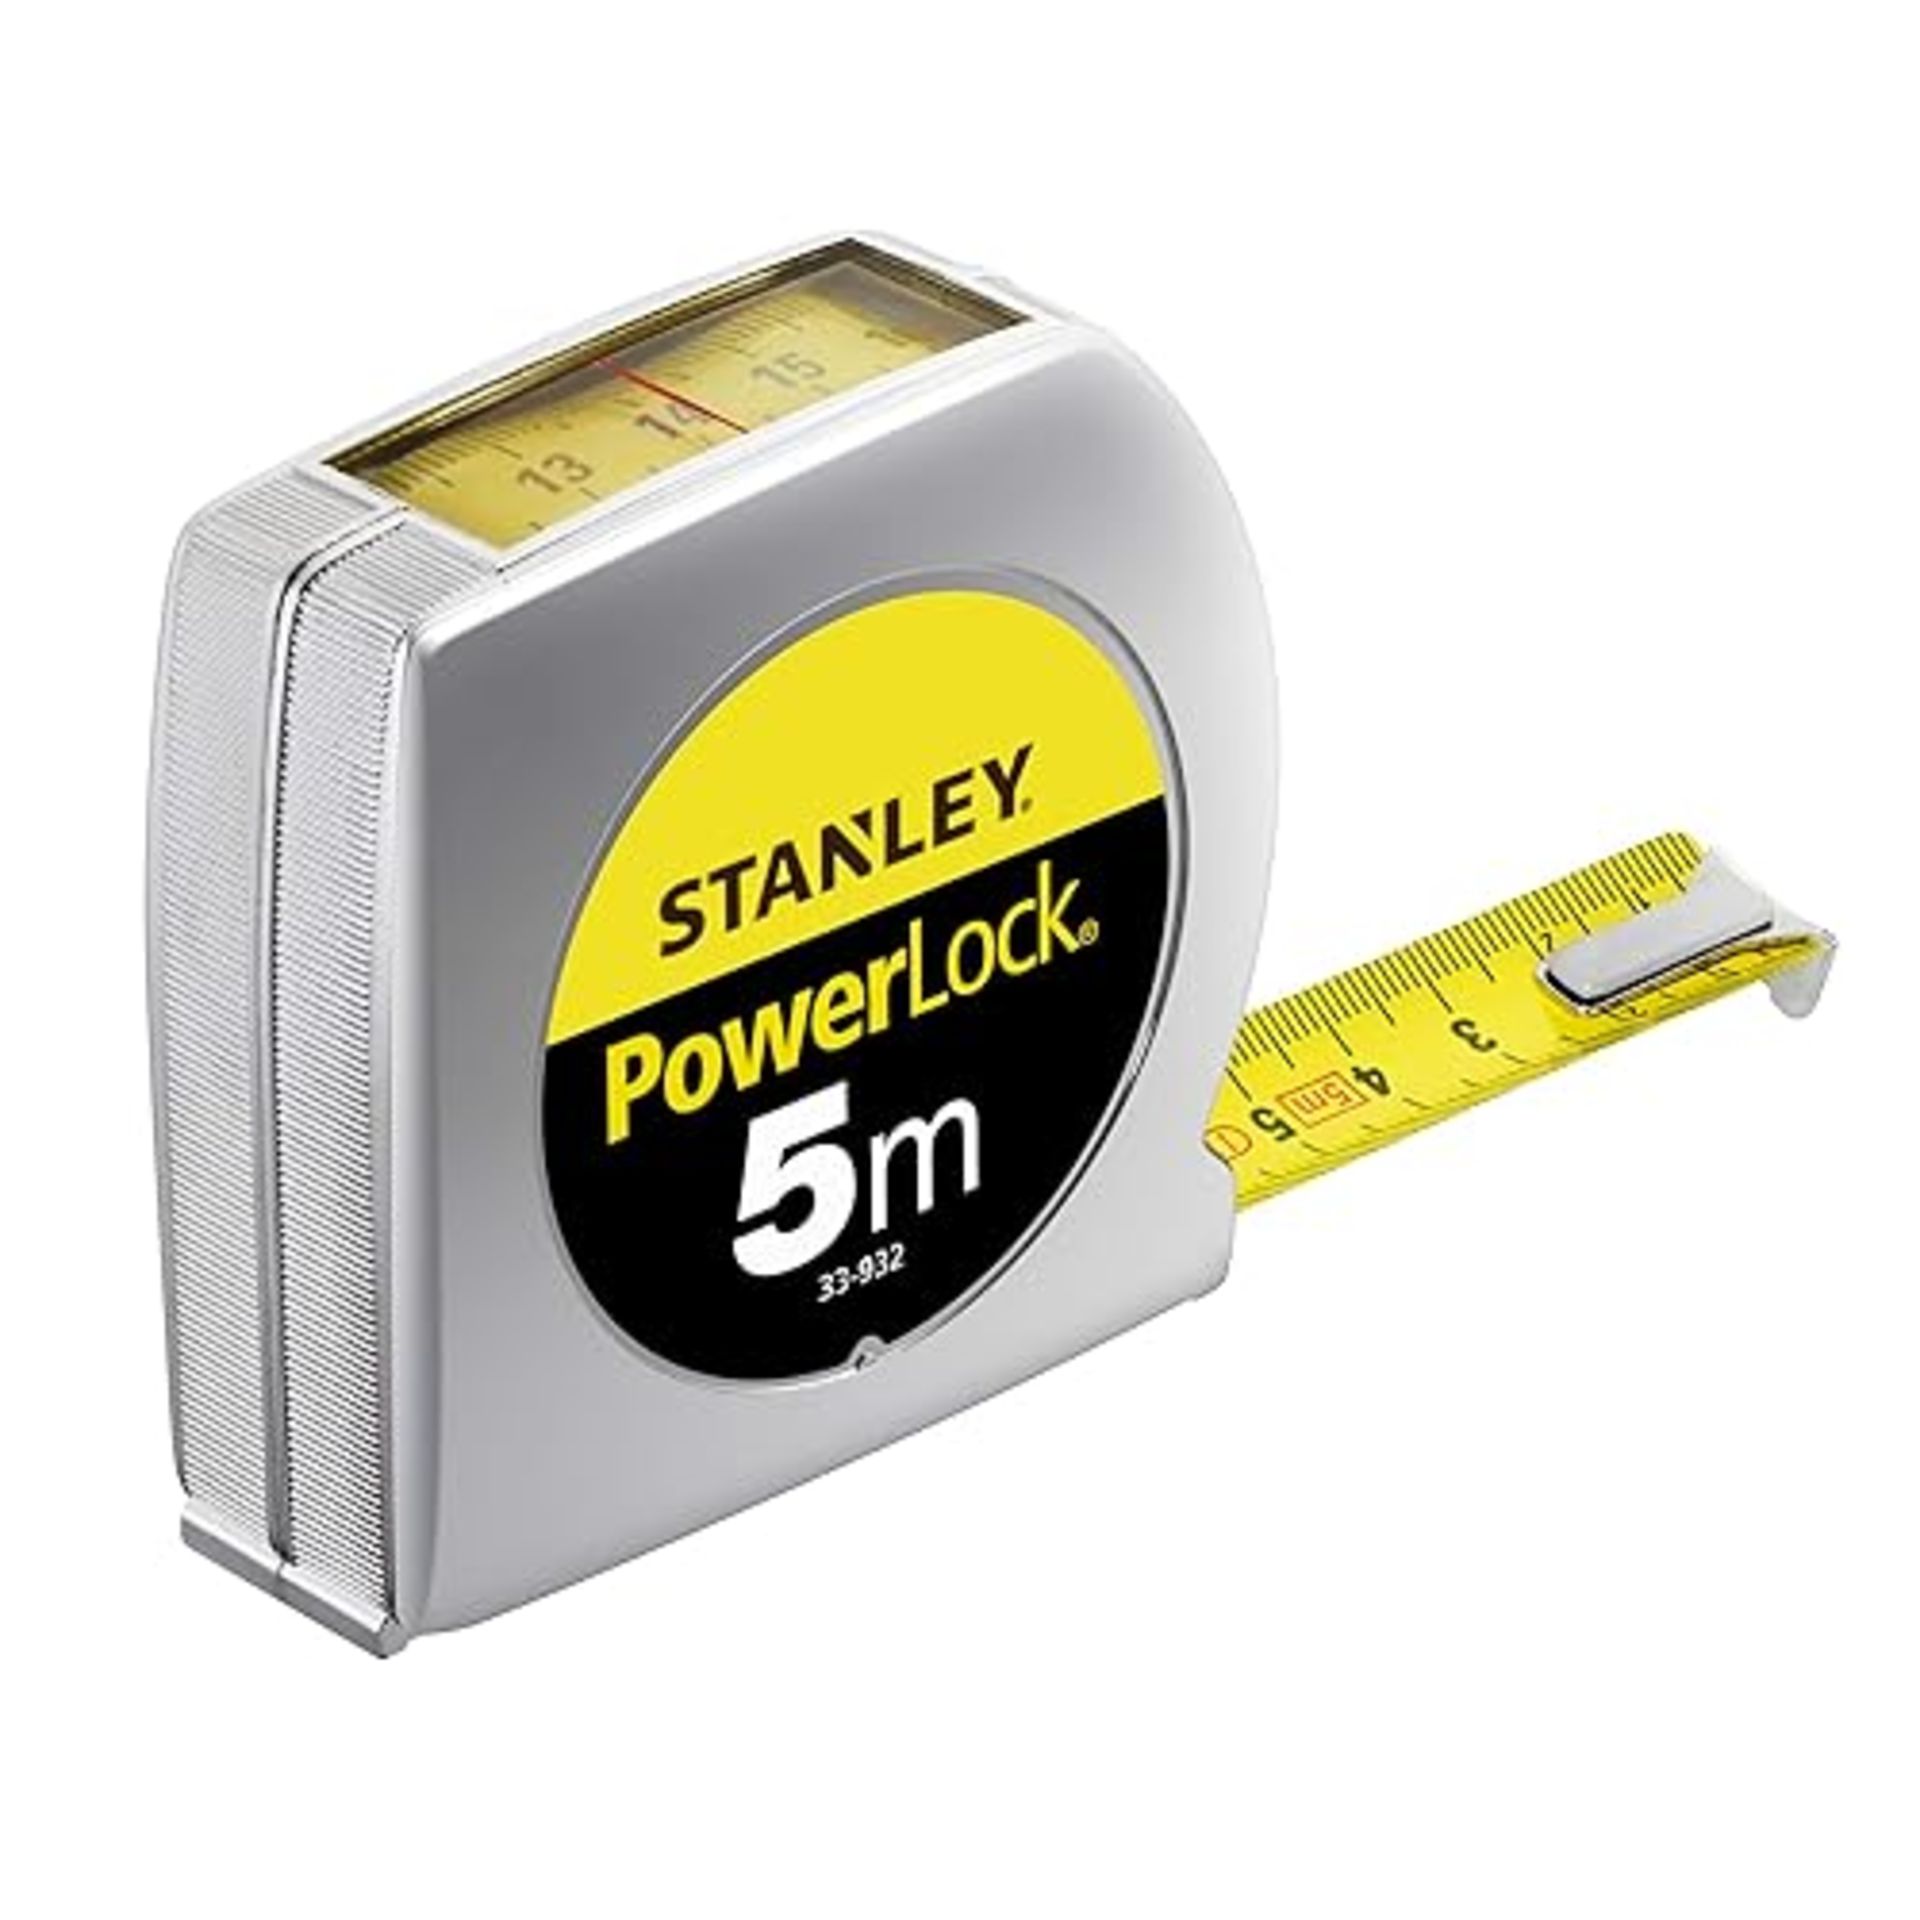 Stanley 033932 Powerlock Tape 5m Top Reader